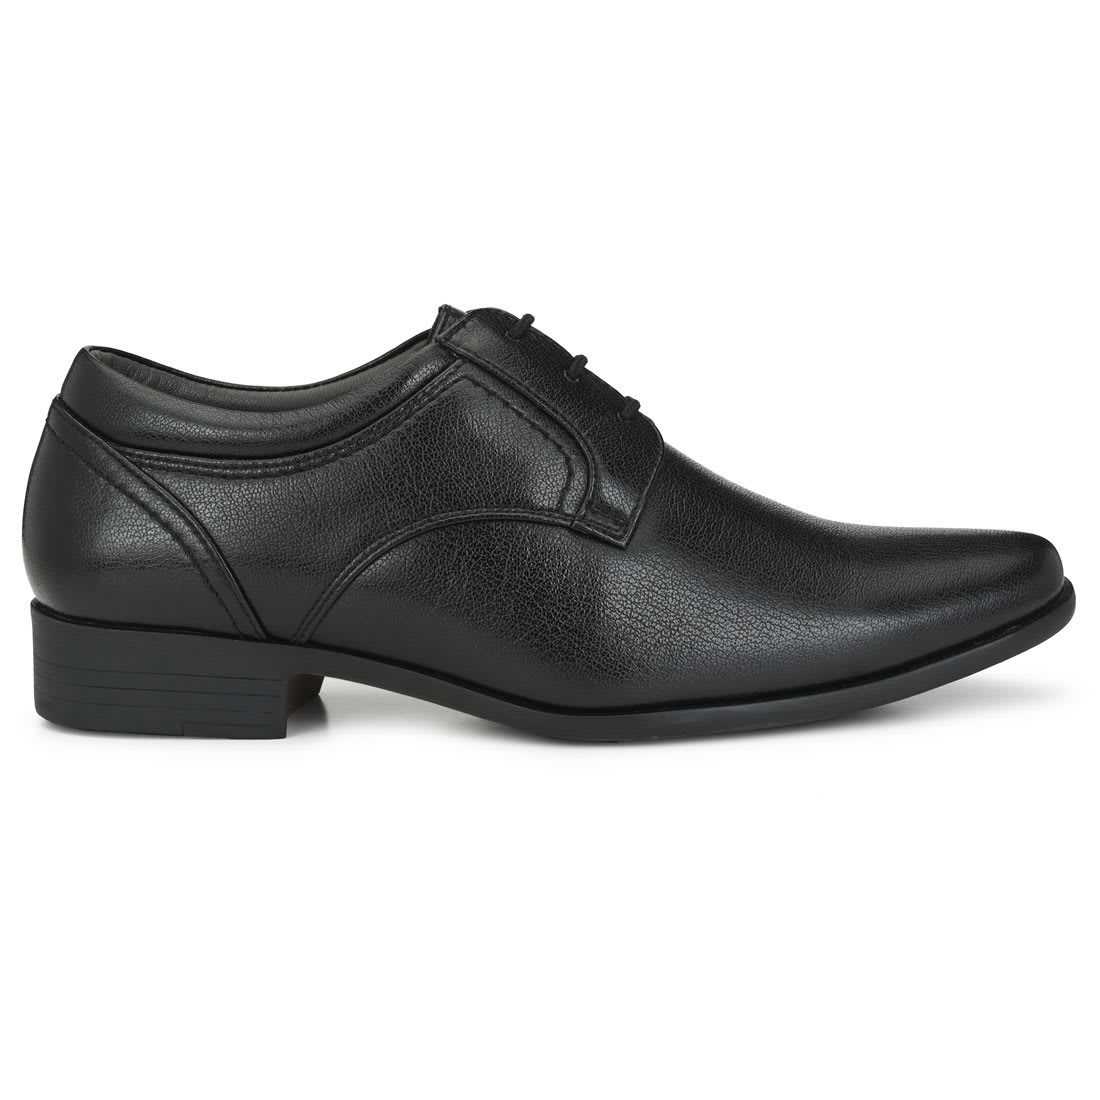 Antonio Bruno Black Formal Laceup Shoes